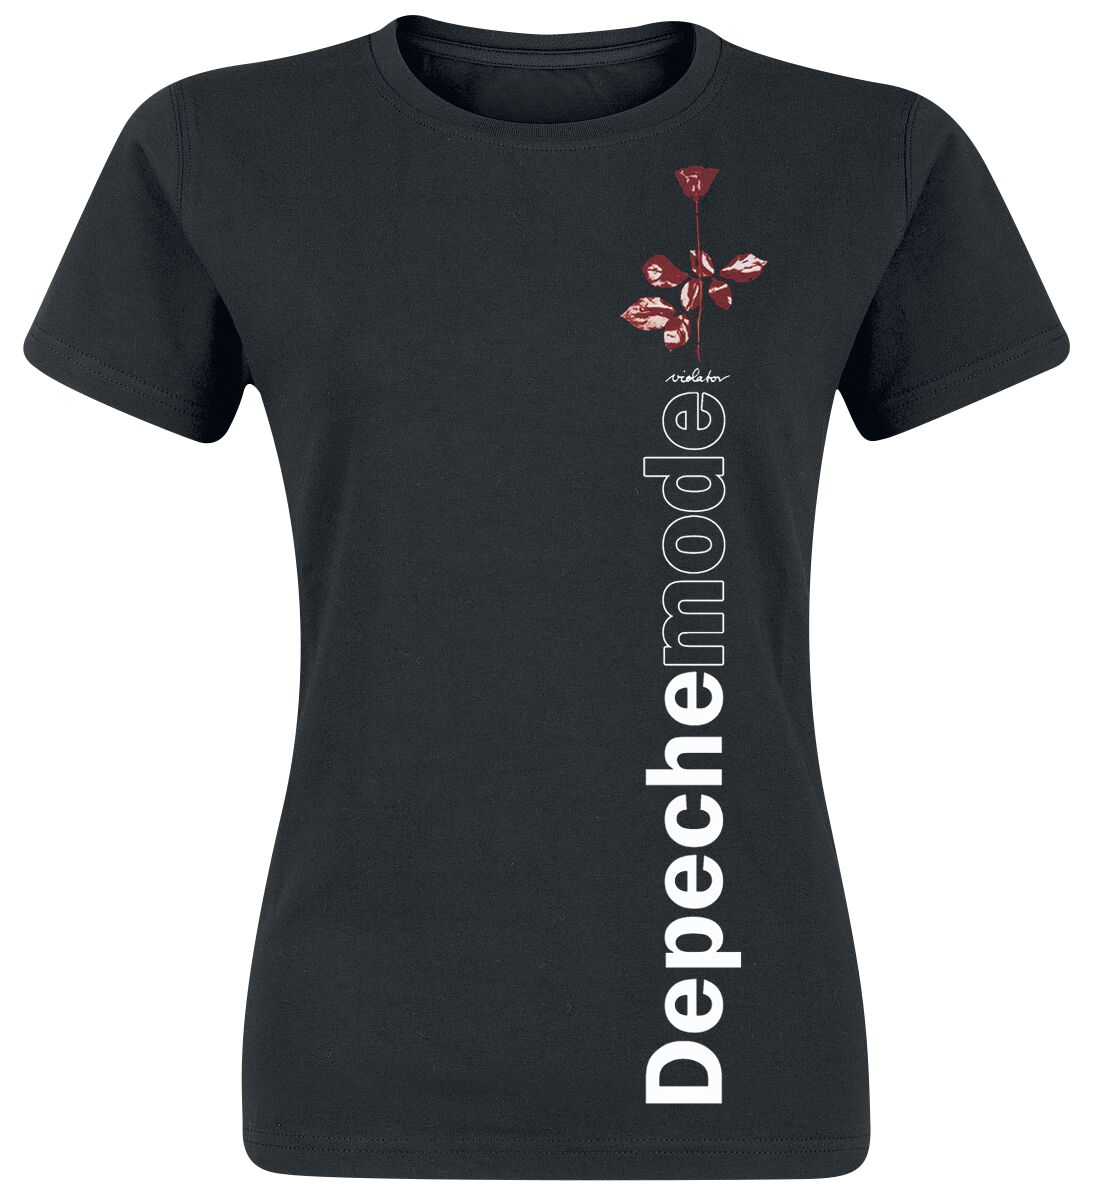 T-Shirt Manches courtes de Depeche Mode - Violator Side Rose - S à XXL - pour Femme - noir